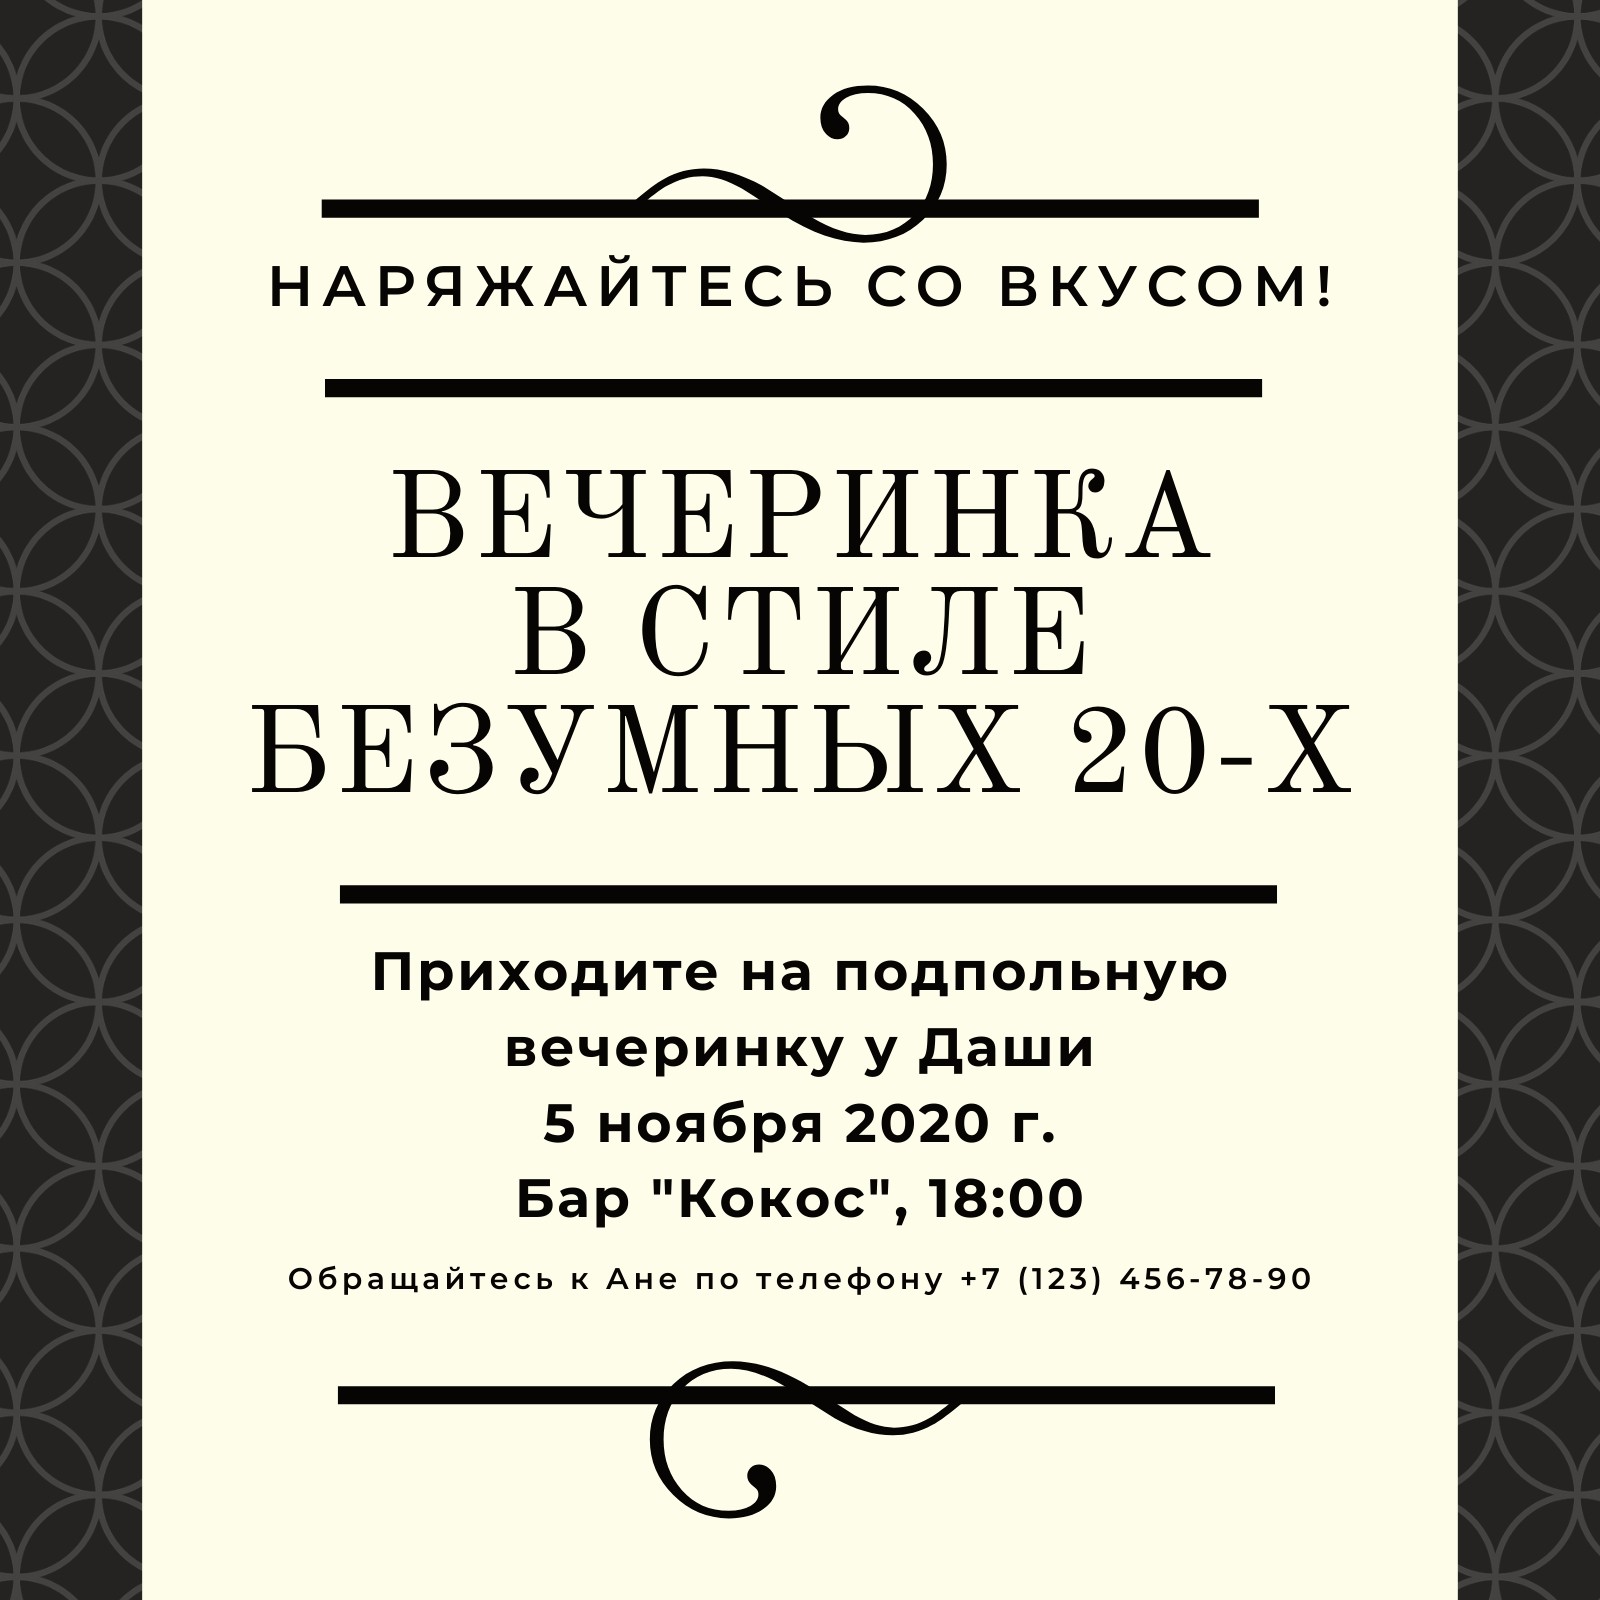 Приглашения на вечеринку онлайн бесплатно — пригласительные открытки sauna-chelyabinsk.ru